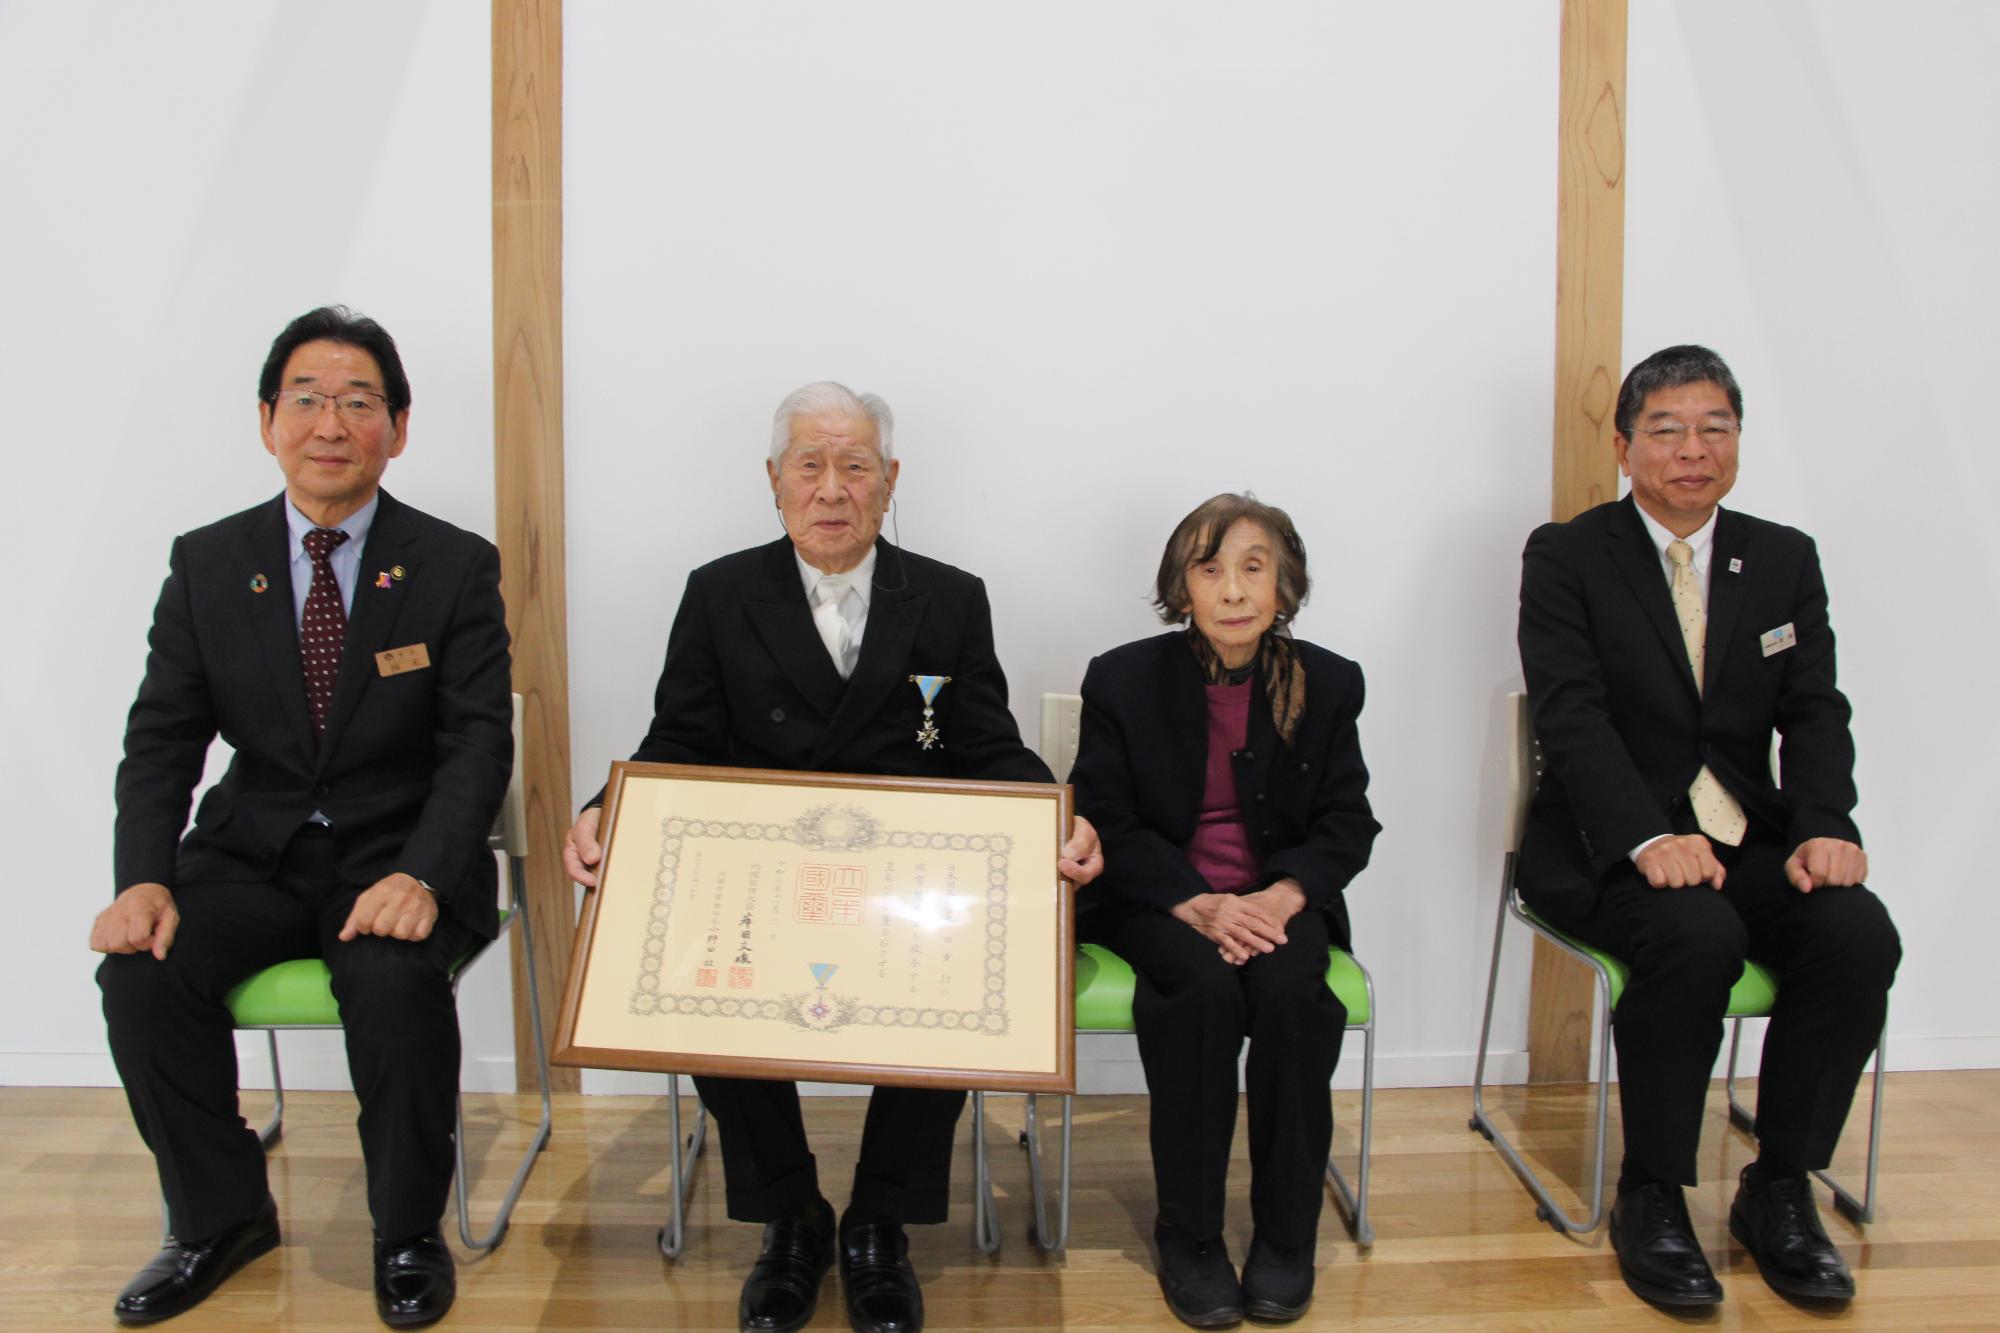 左は福元市長、中は勲記を手にした春田さんご夫妻、右は兵庫県西播磨県民局長が並んでいる写真